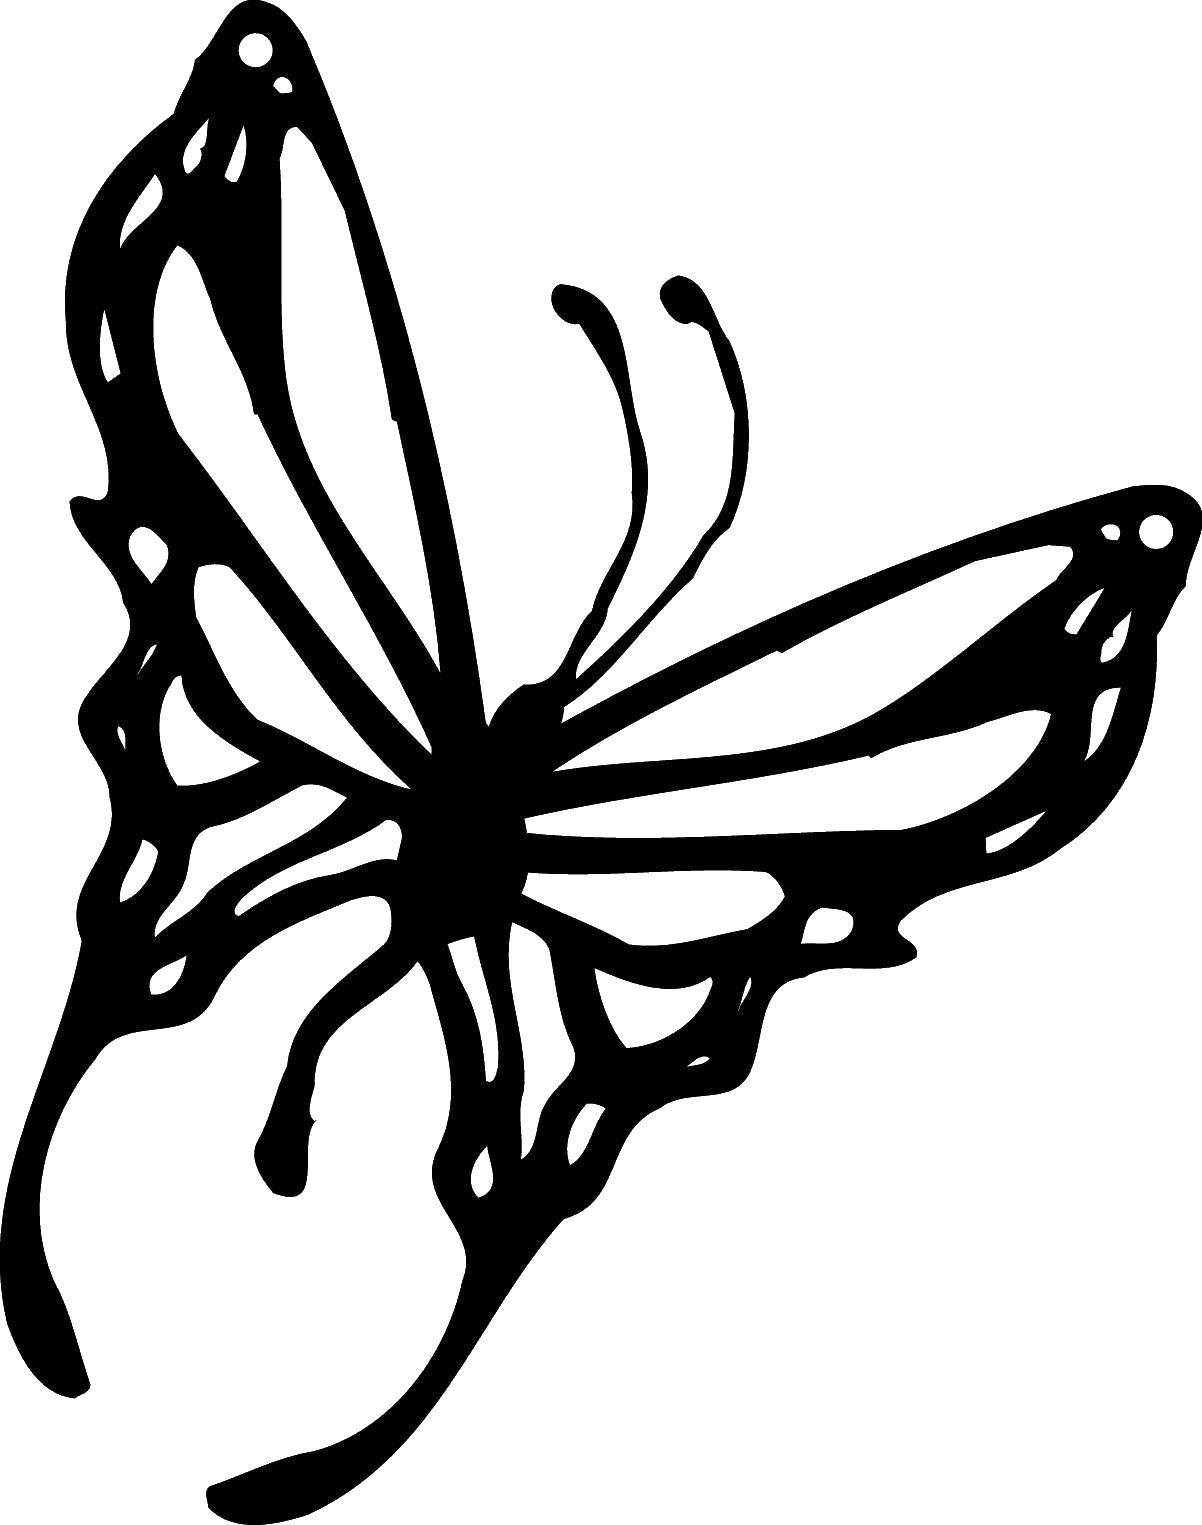 Название: Раскраска Раскрась крылышки. Категория: бабочки. Теги: насекомые, бабочка, крылья.